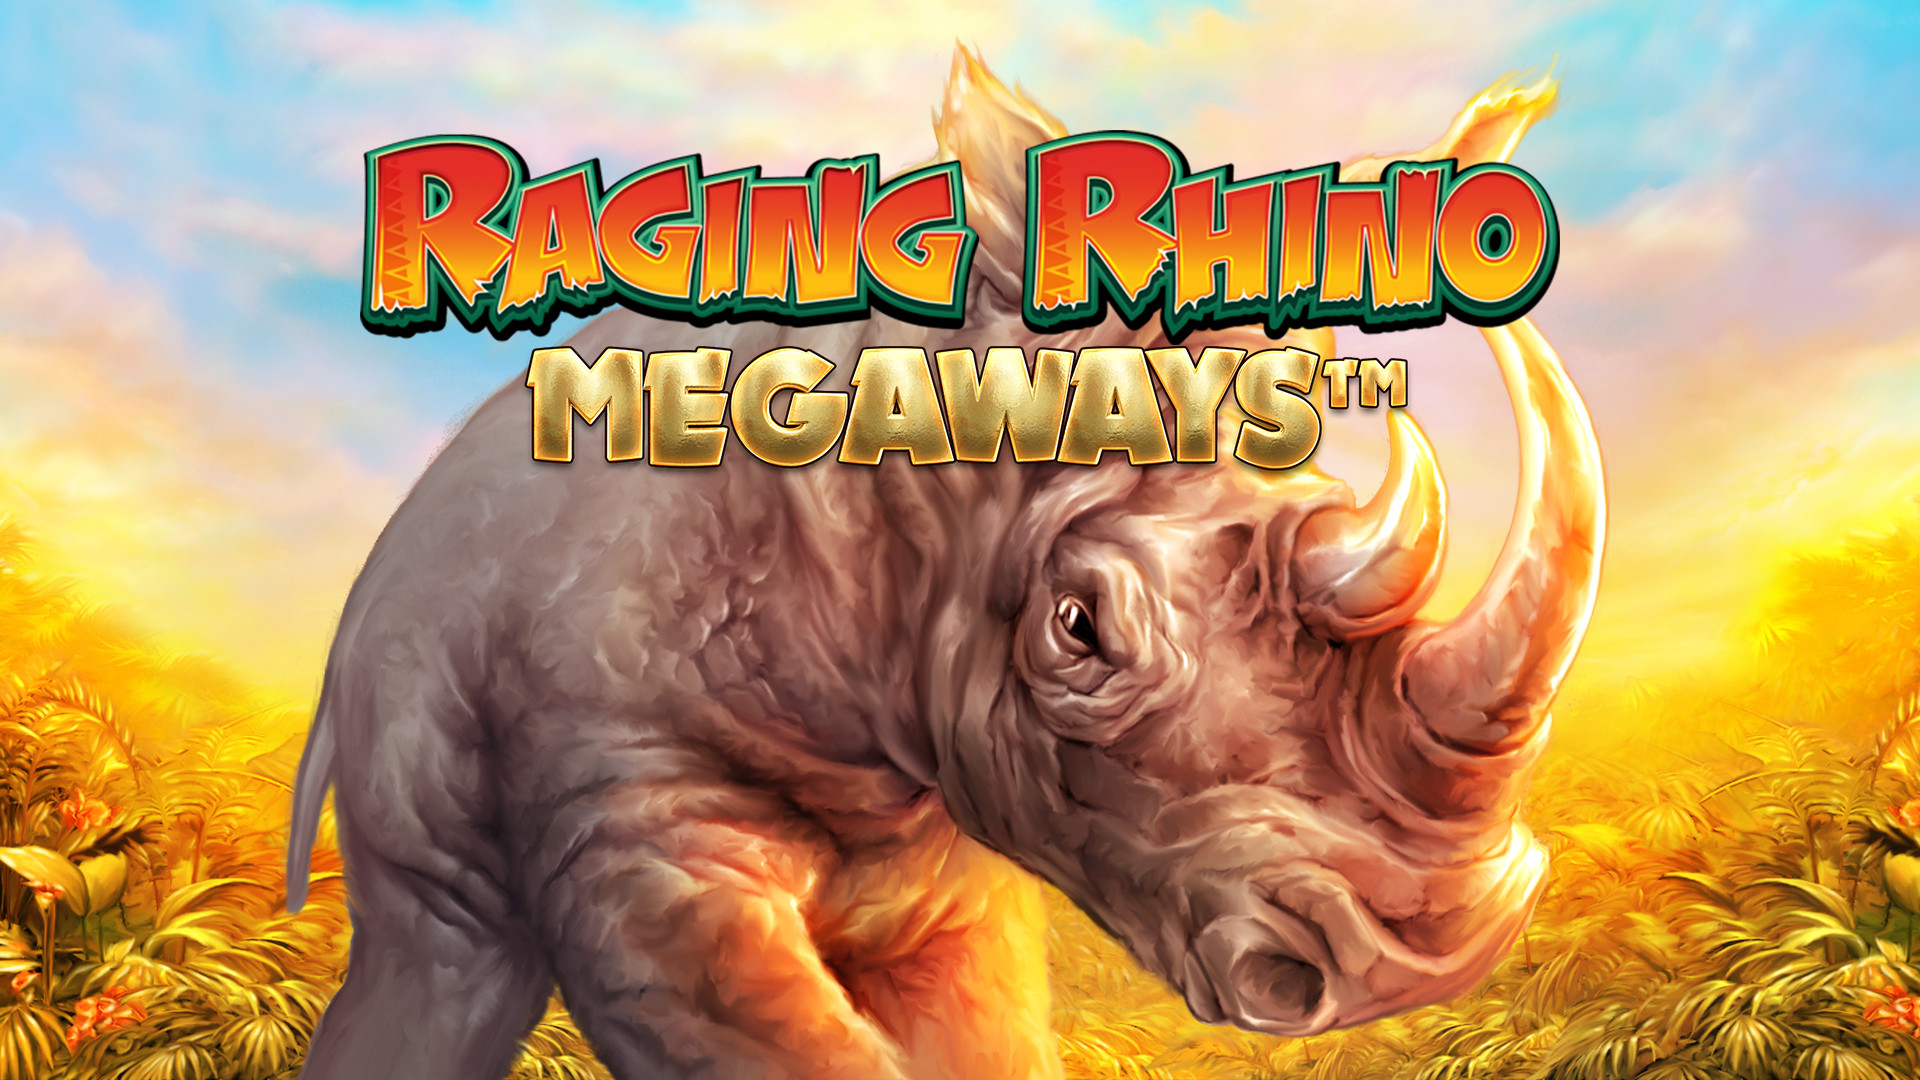 Raging Rhino MEGAWAYS